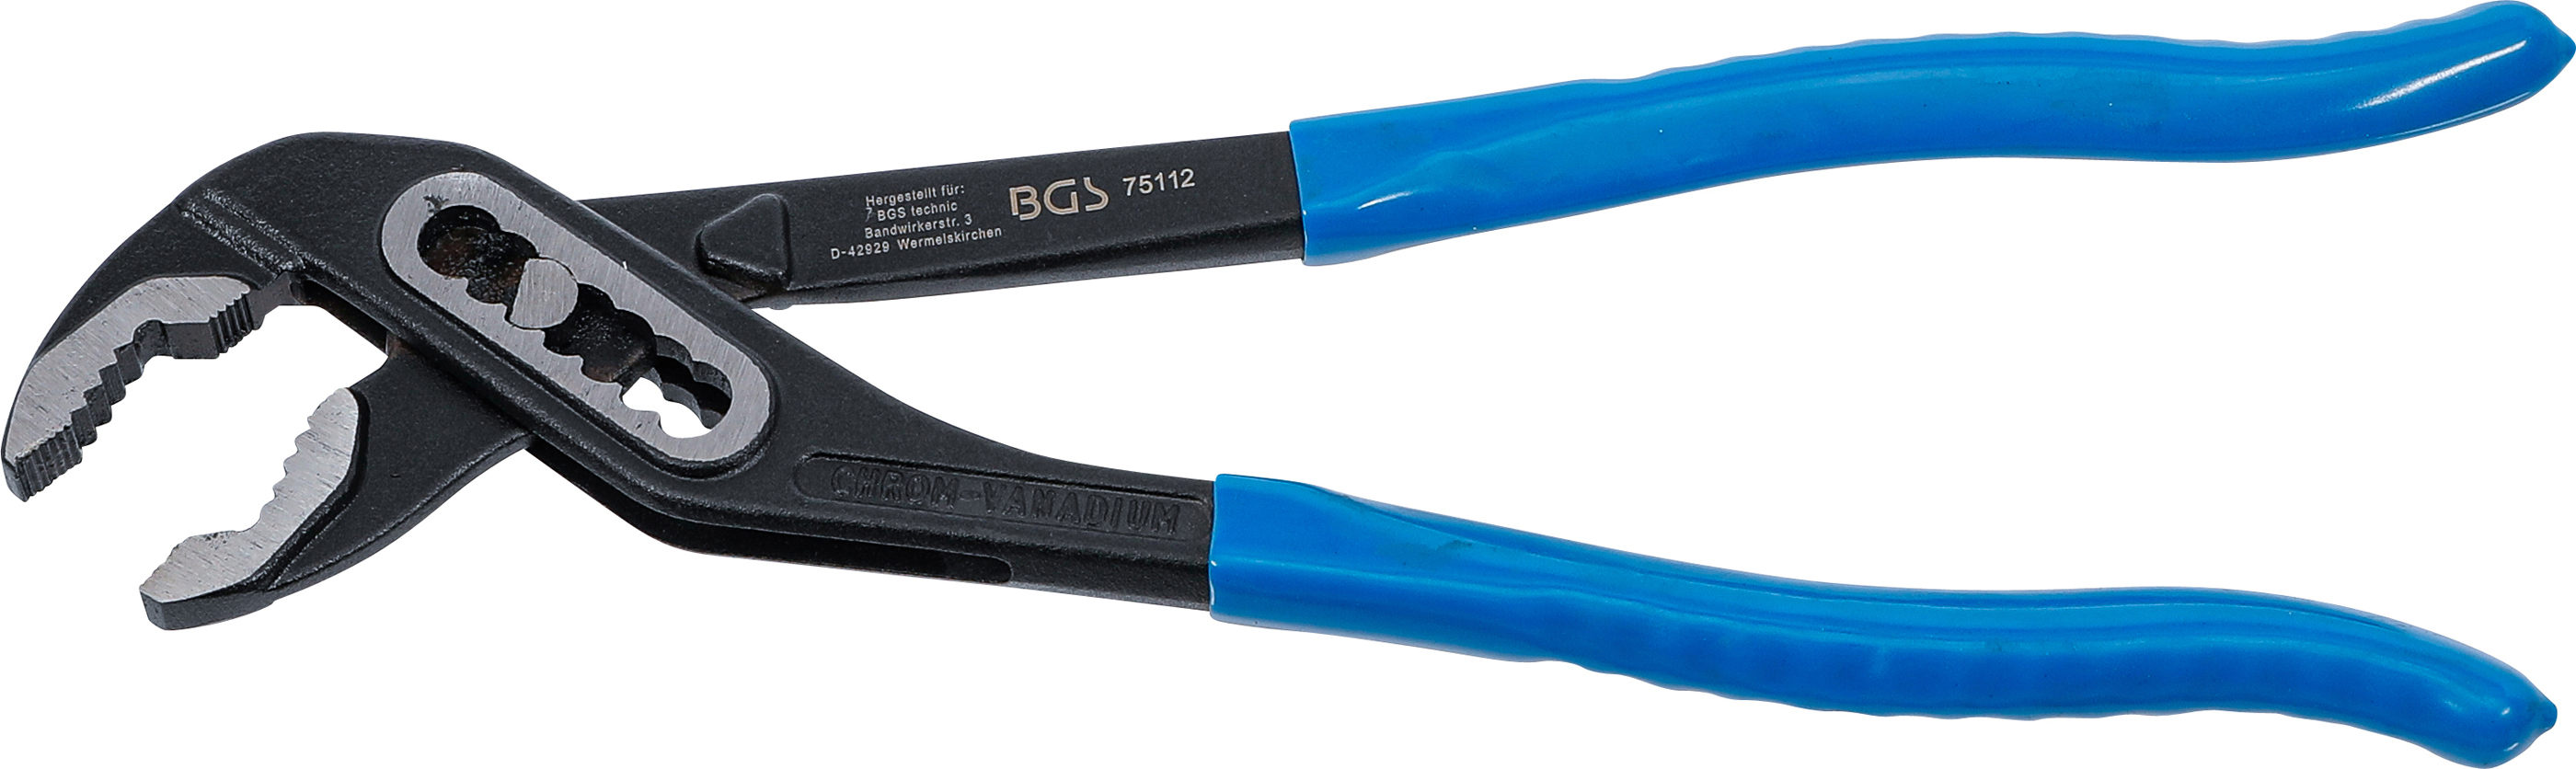 BGS 75112 Cleste reglabil cu deschidere max. 44mm , lungime 300 mm